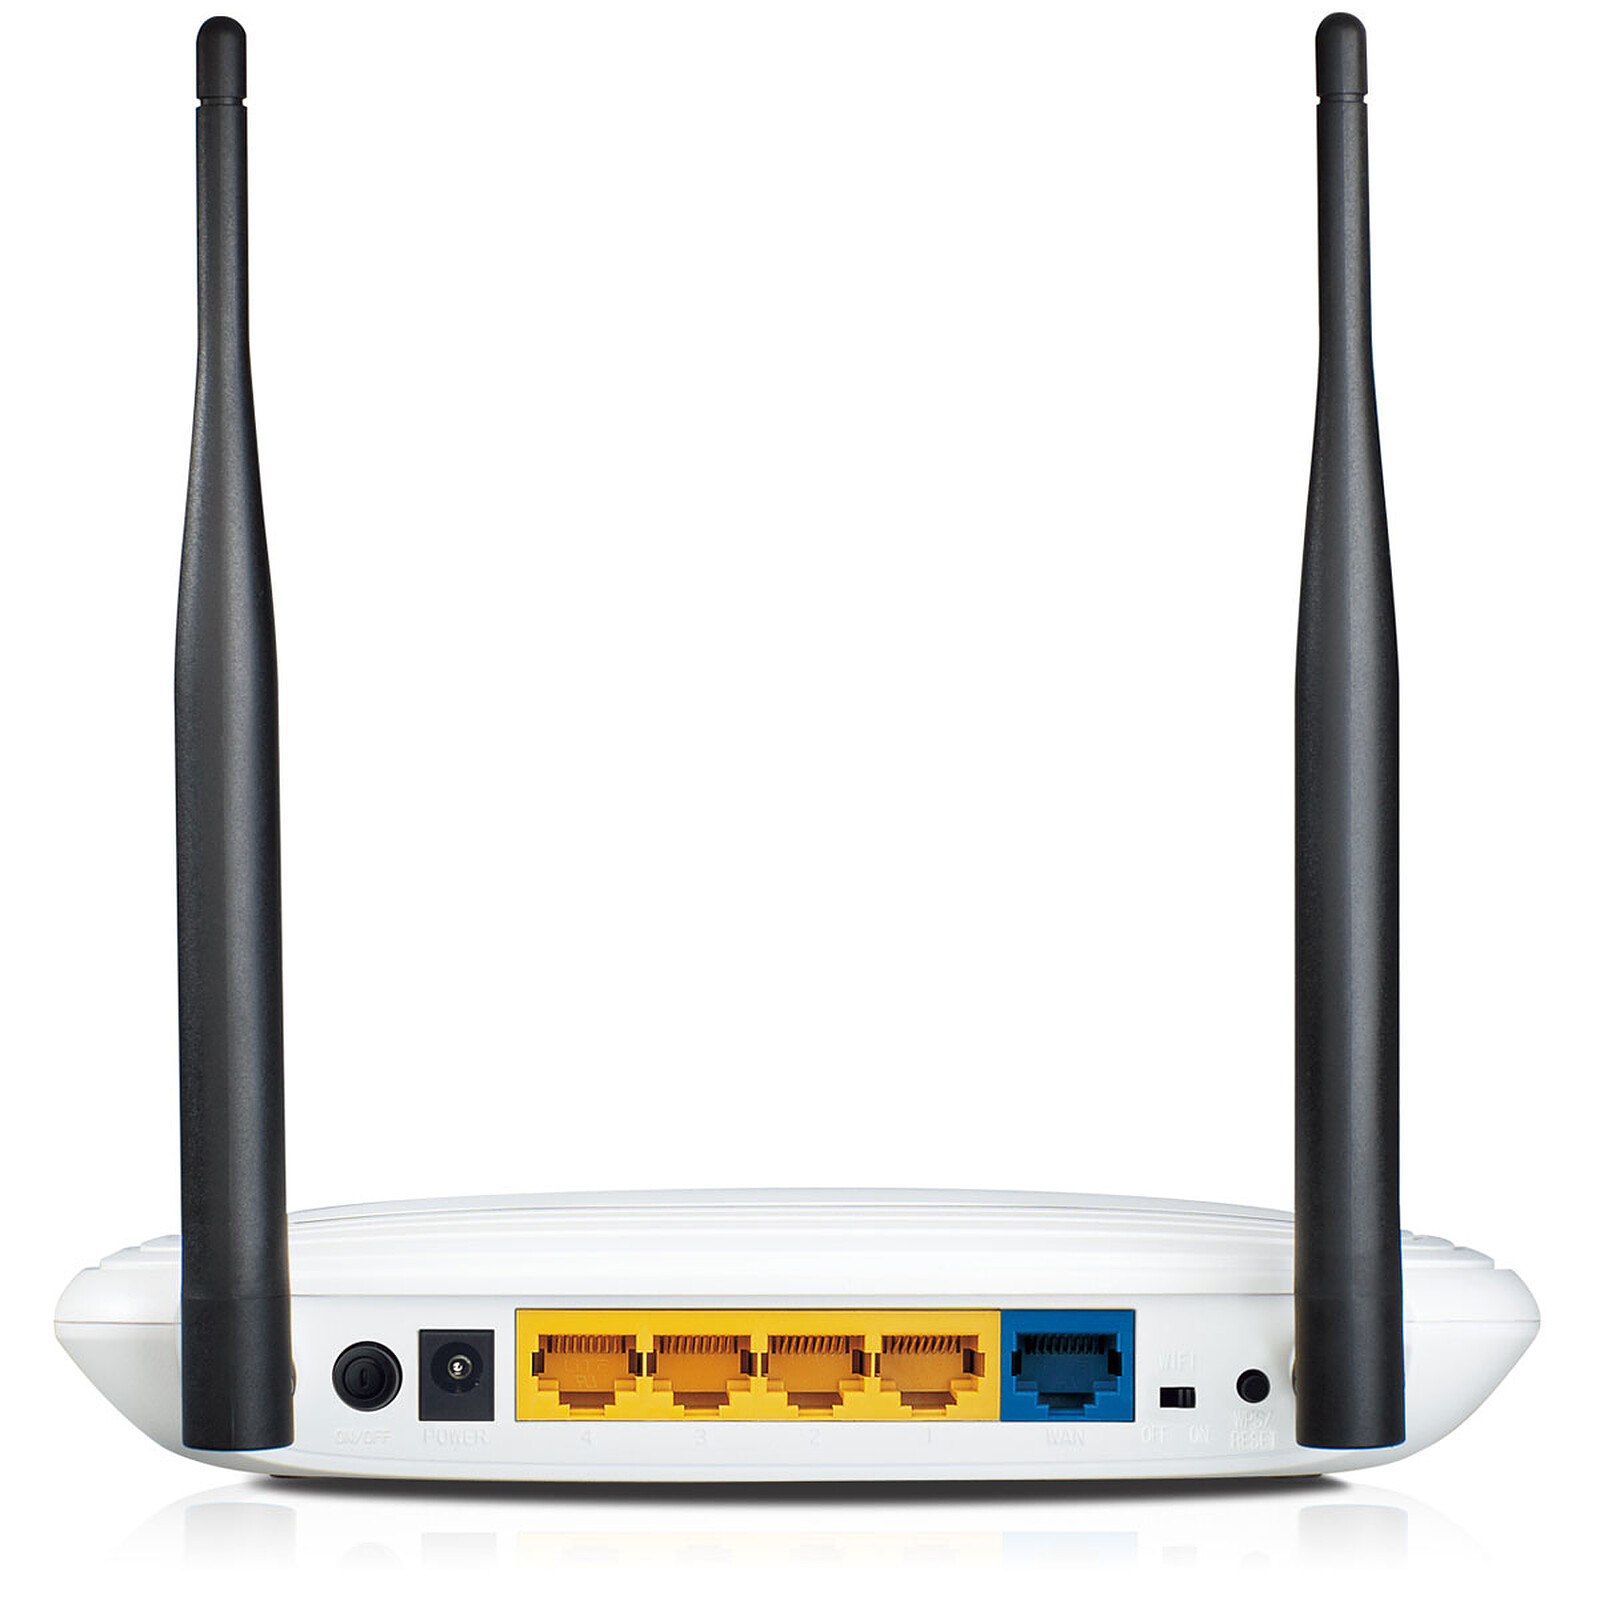 Routeur Wifi TP-LINK Modem routeur 4G WiFi N 300Mbps MR150